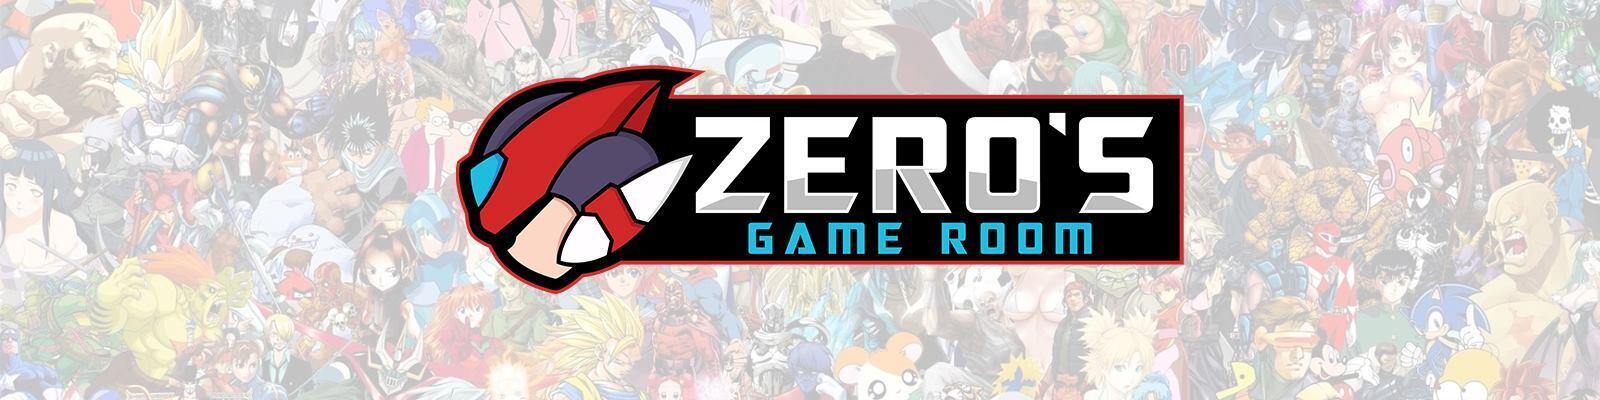 Zero's Game Room